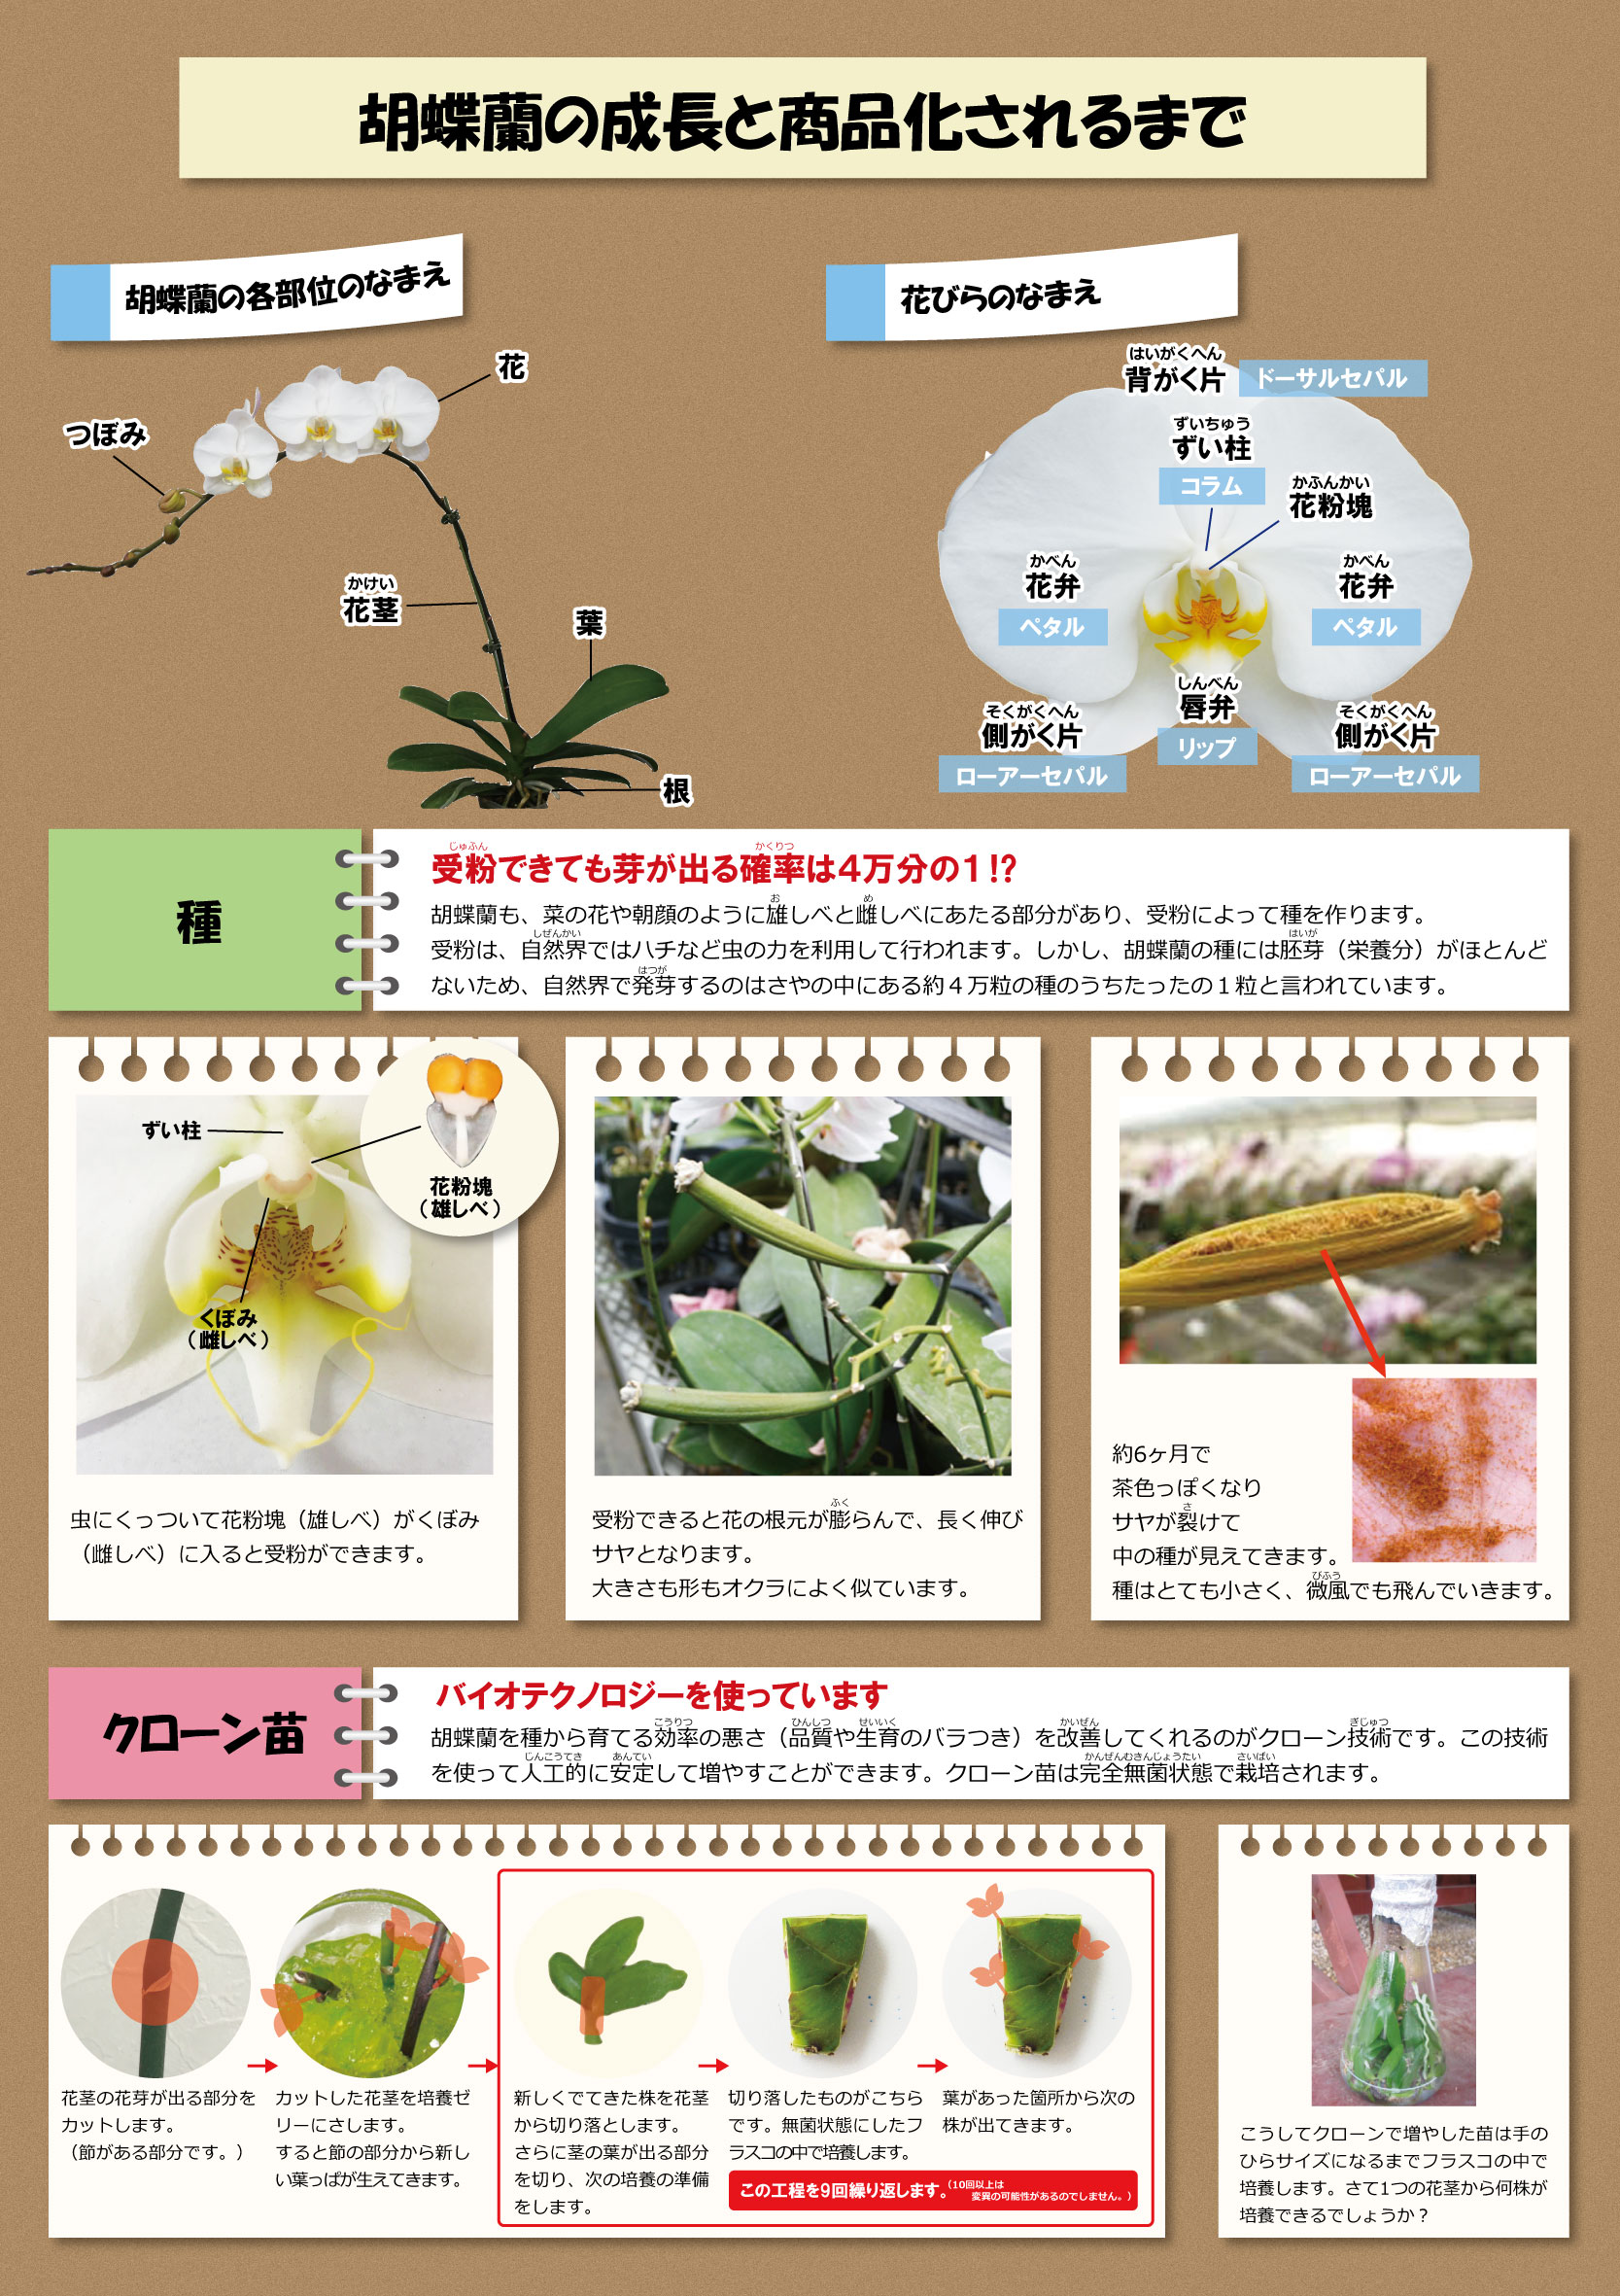 胡蝶蘭の成長と商品化